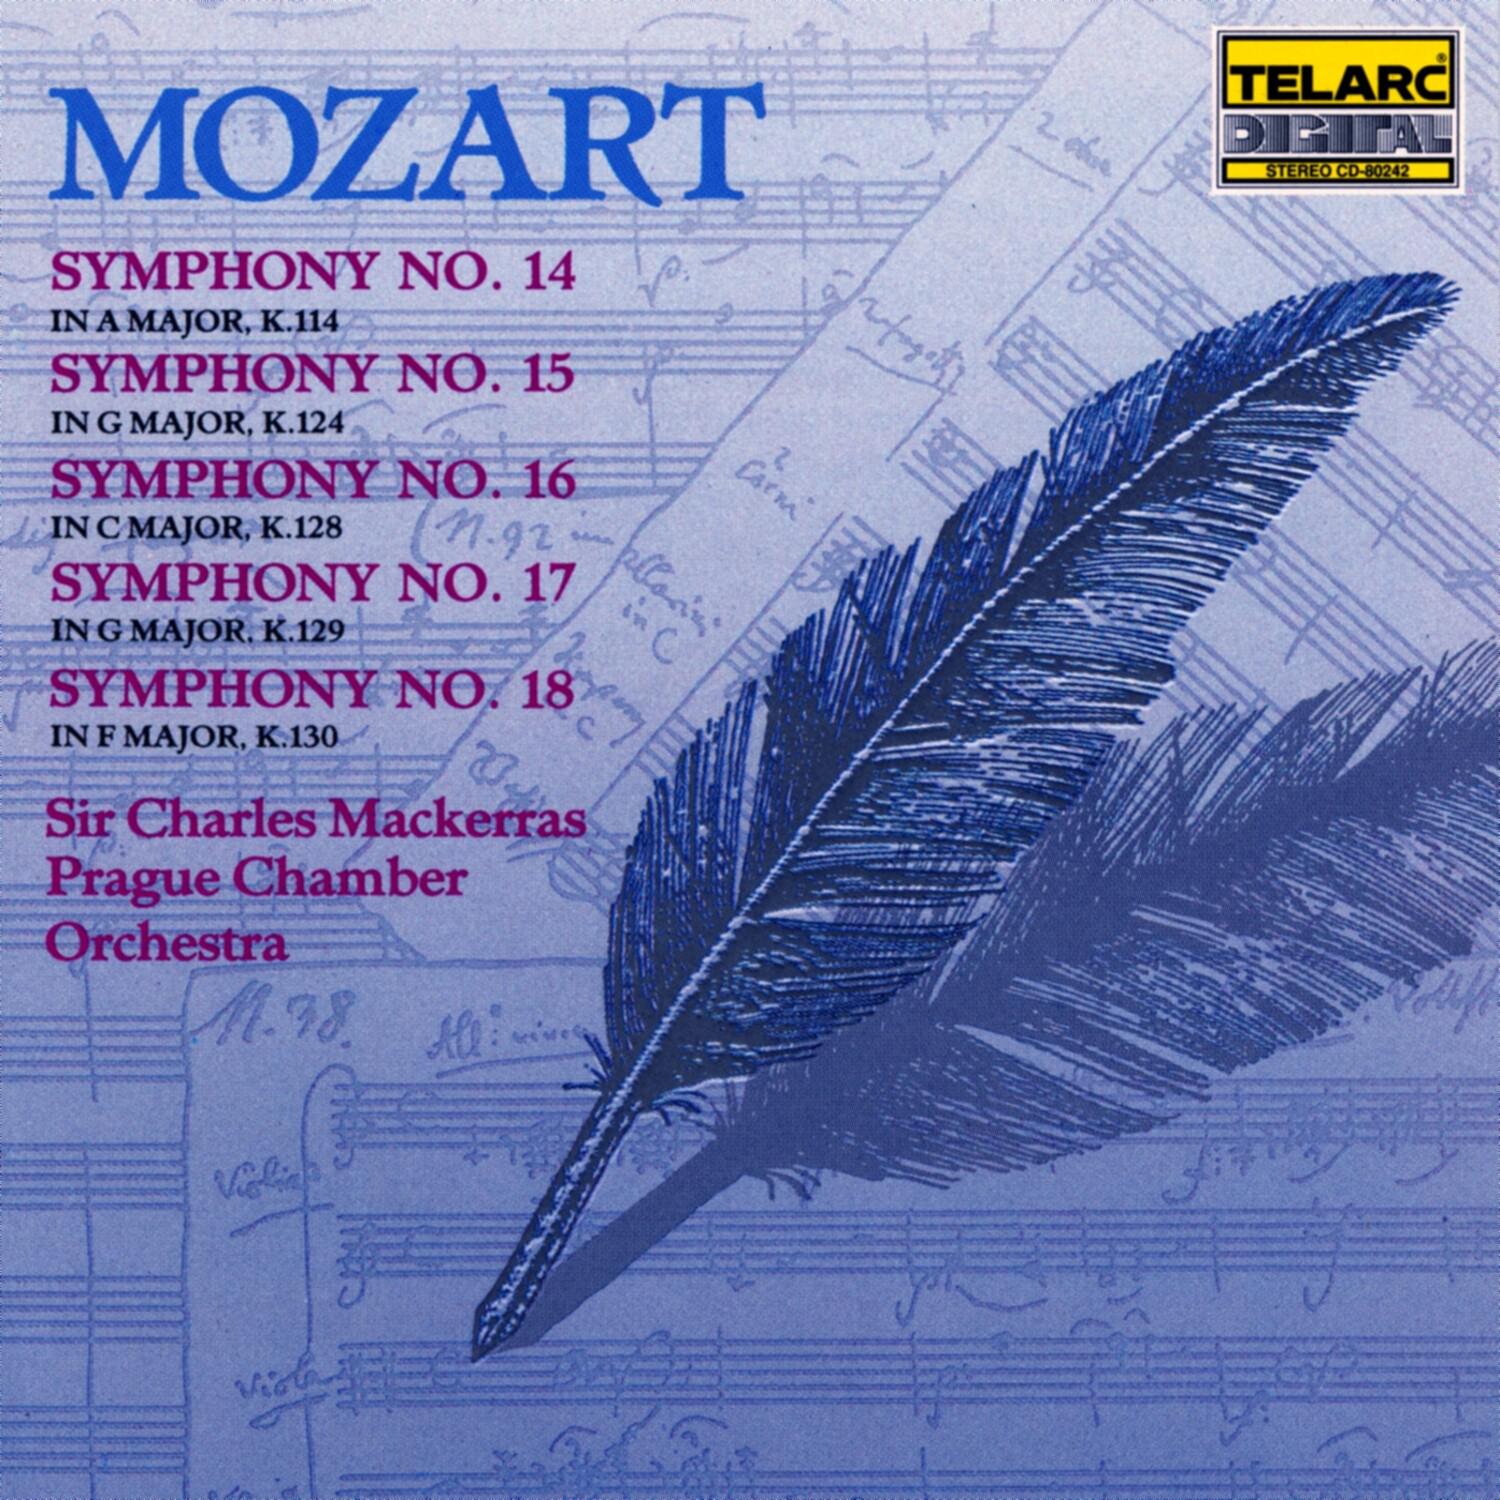 Symphony No. 17 in G major, K.129: III. Allegro